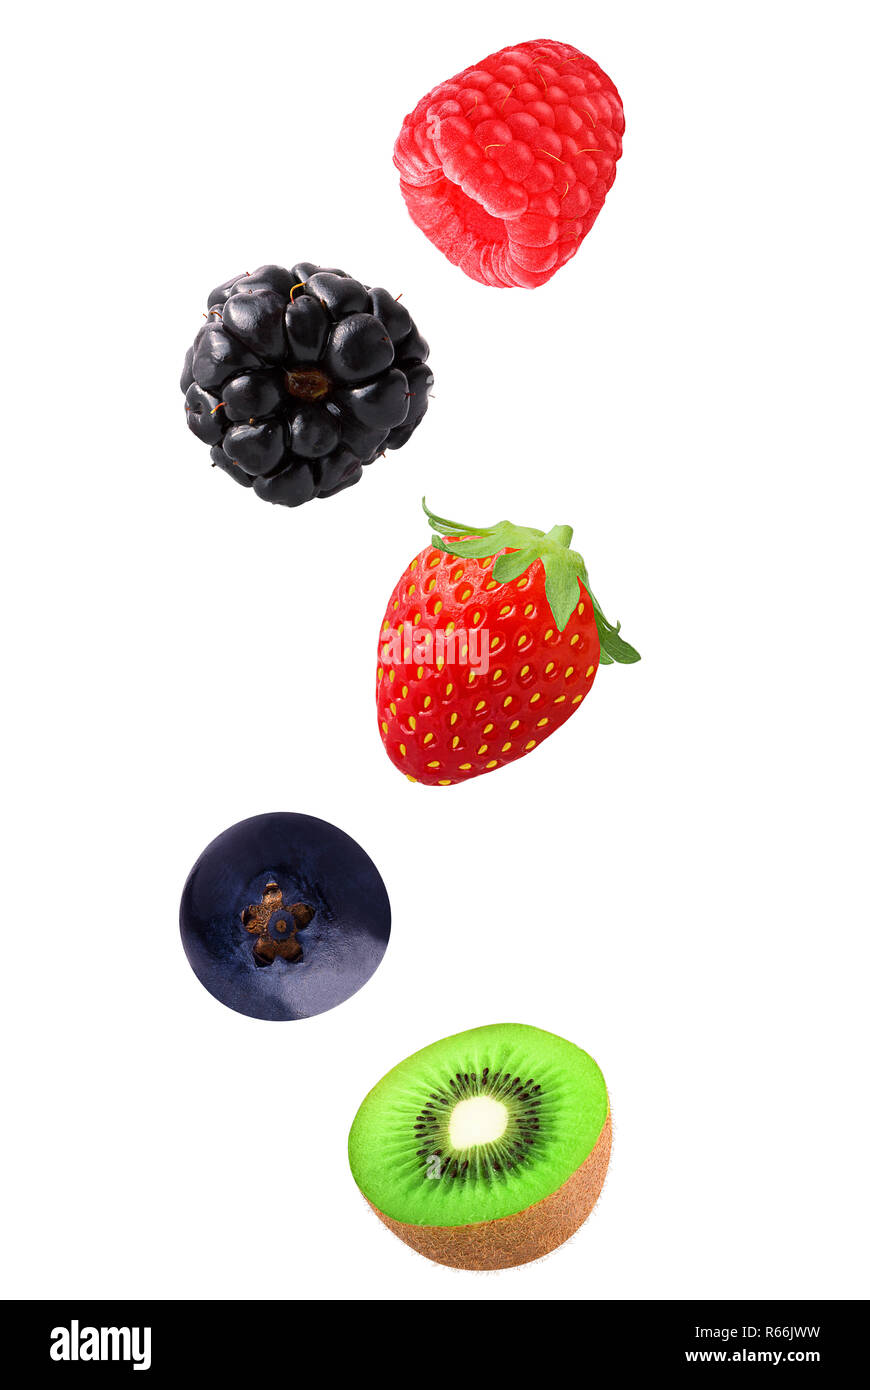 Fruits mélangés isolés dans l'air Banque D'Images